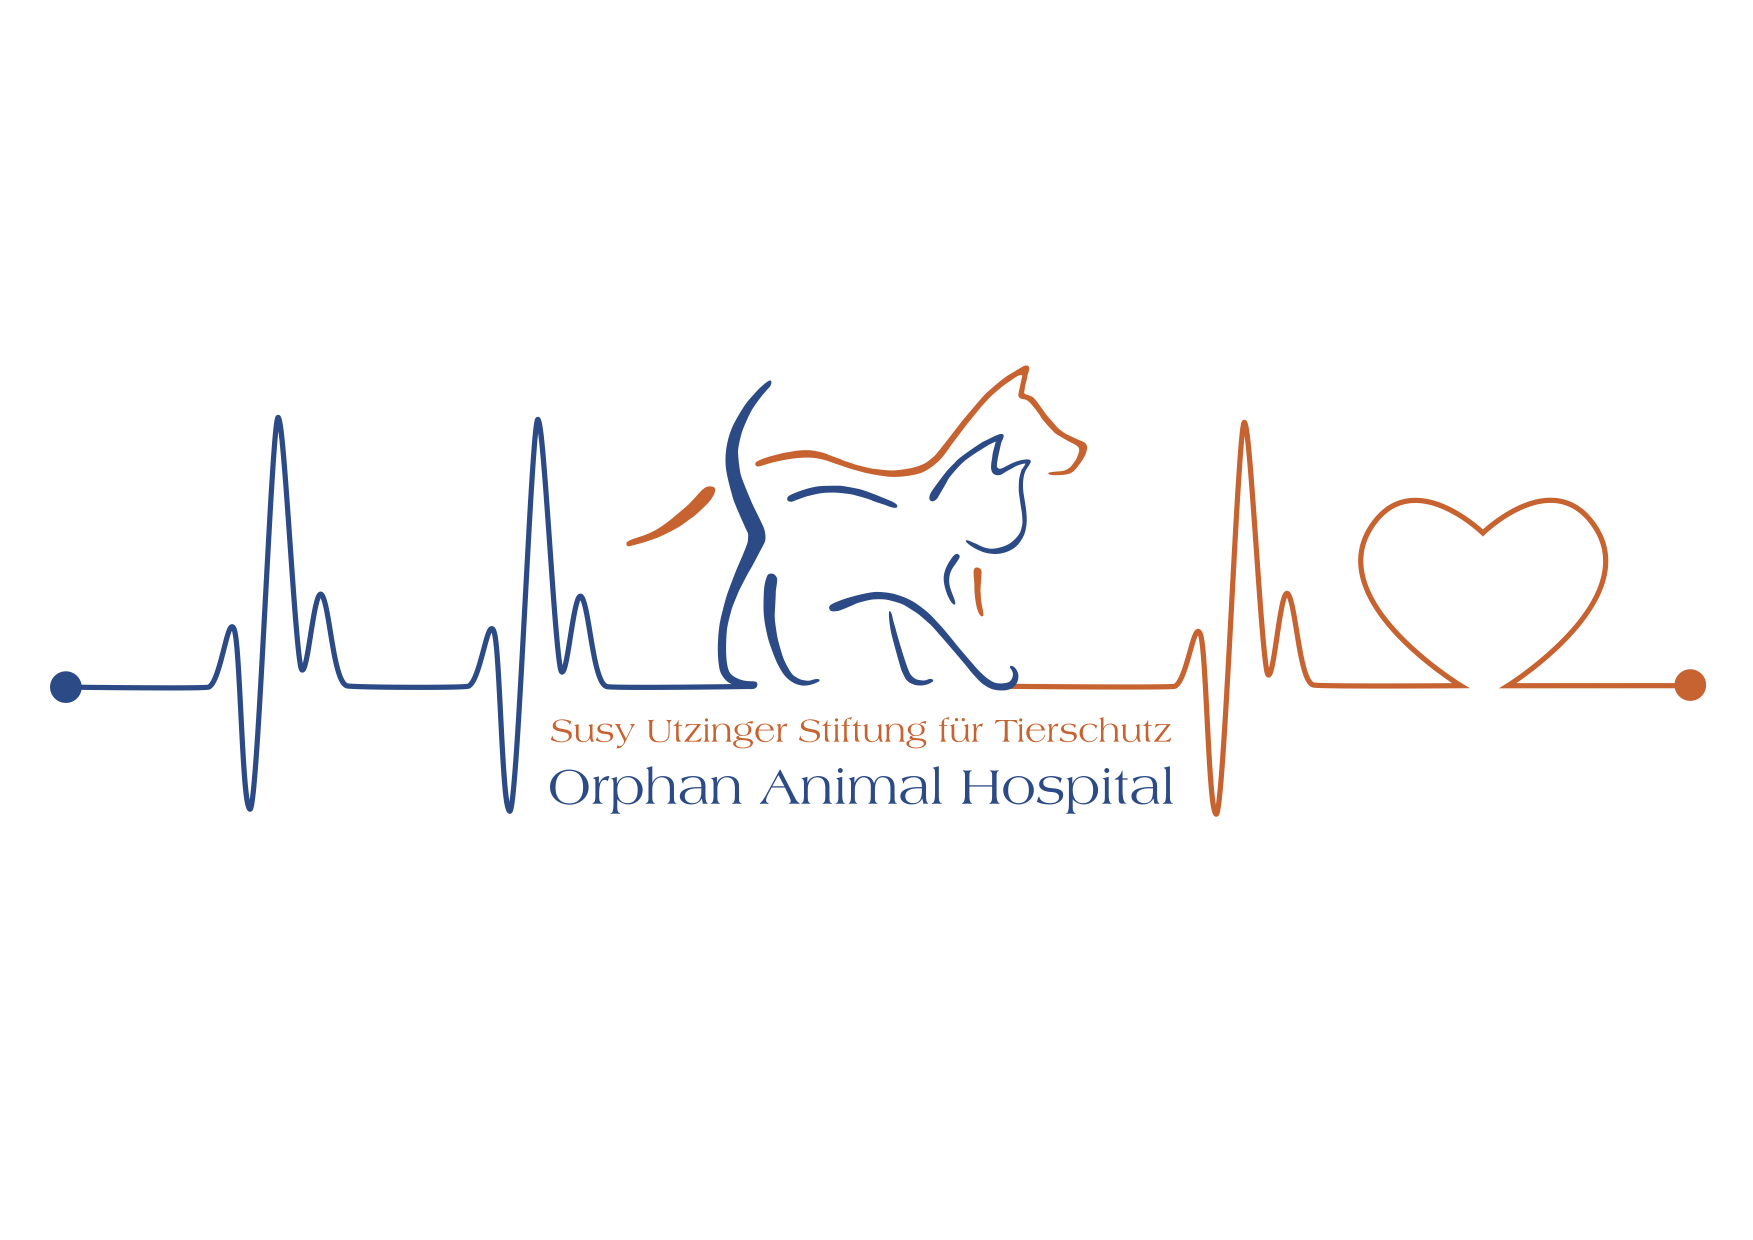 SUST - Hôpital pour animaux orphelins